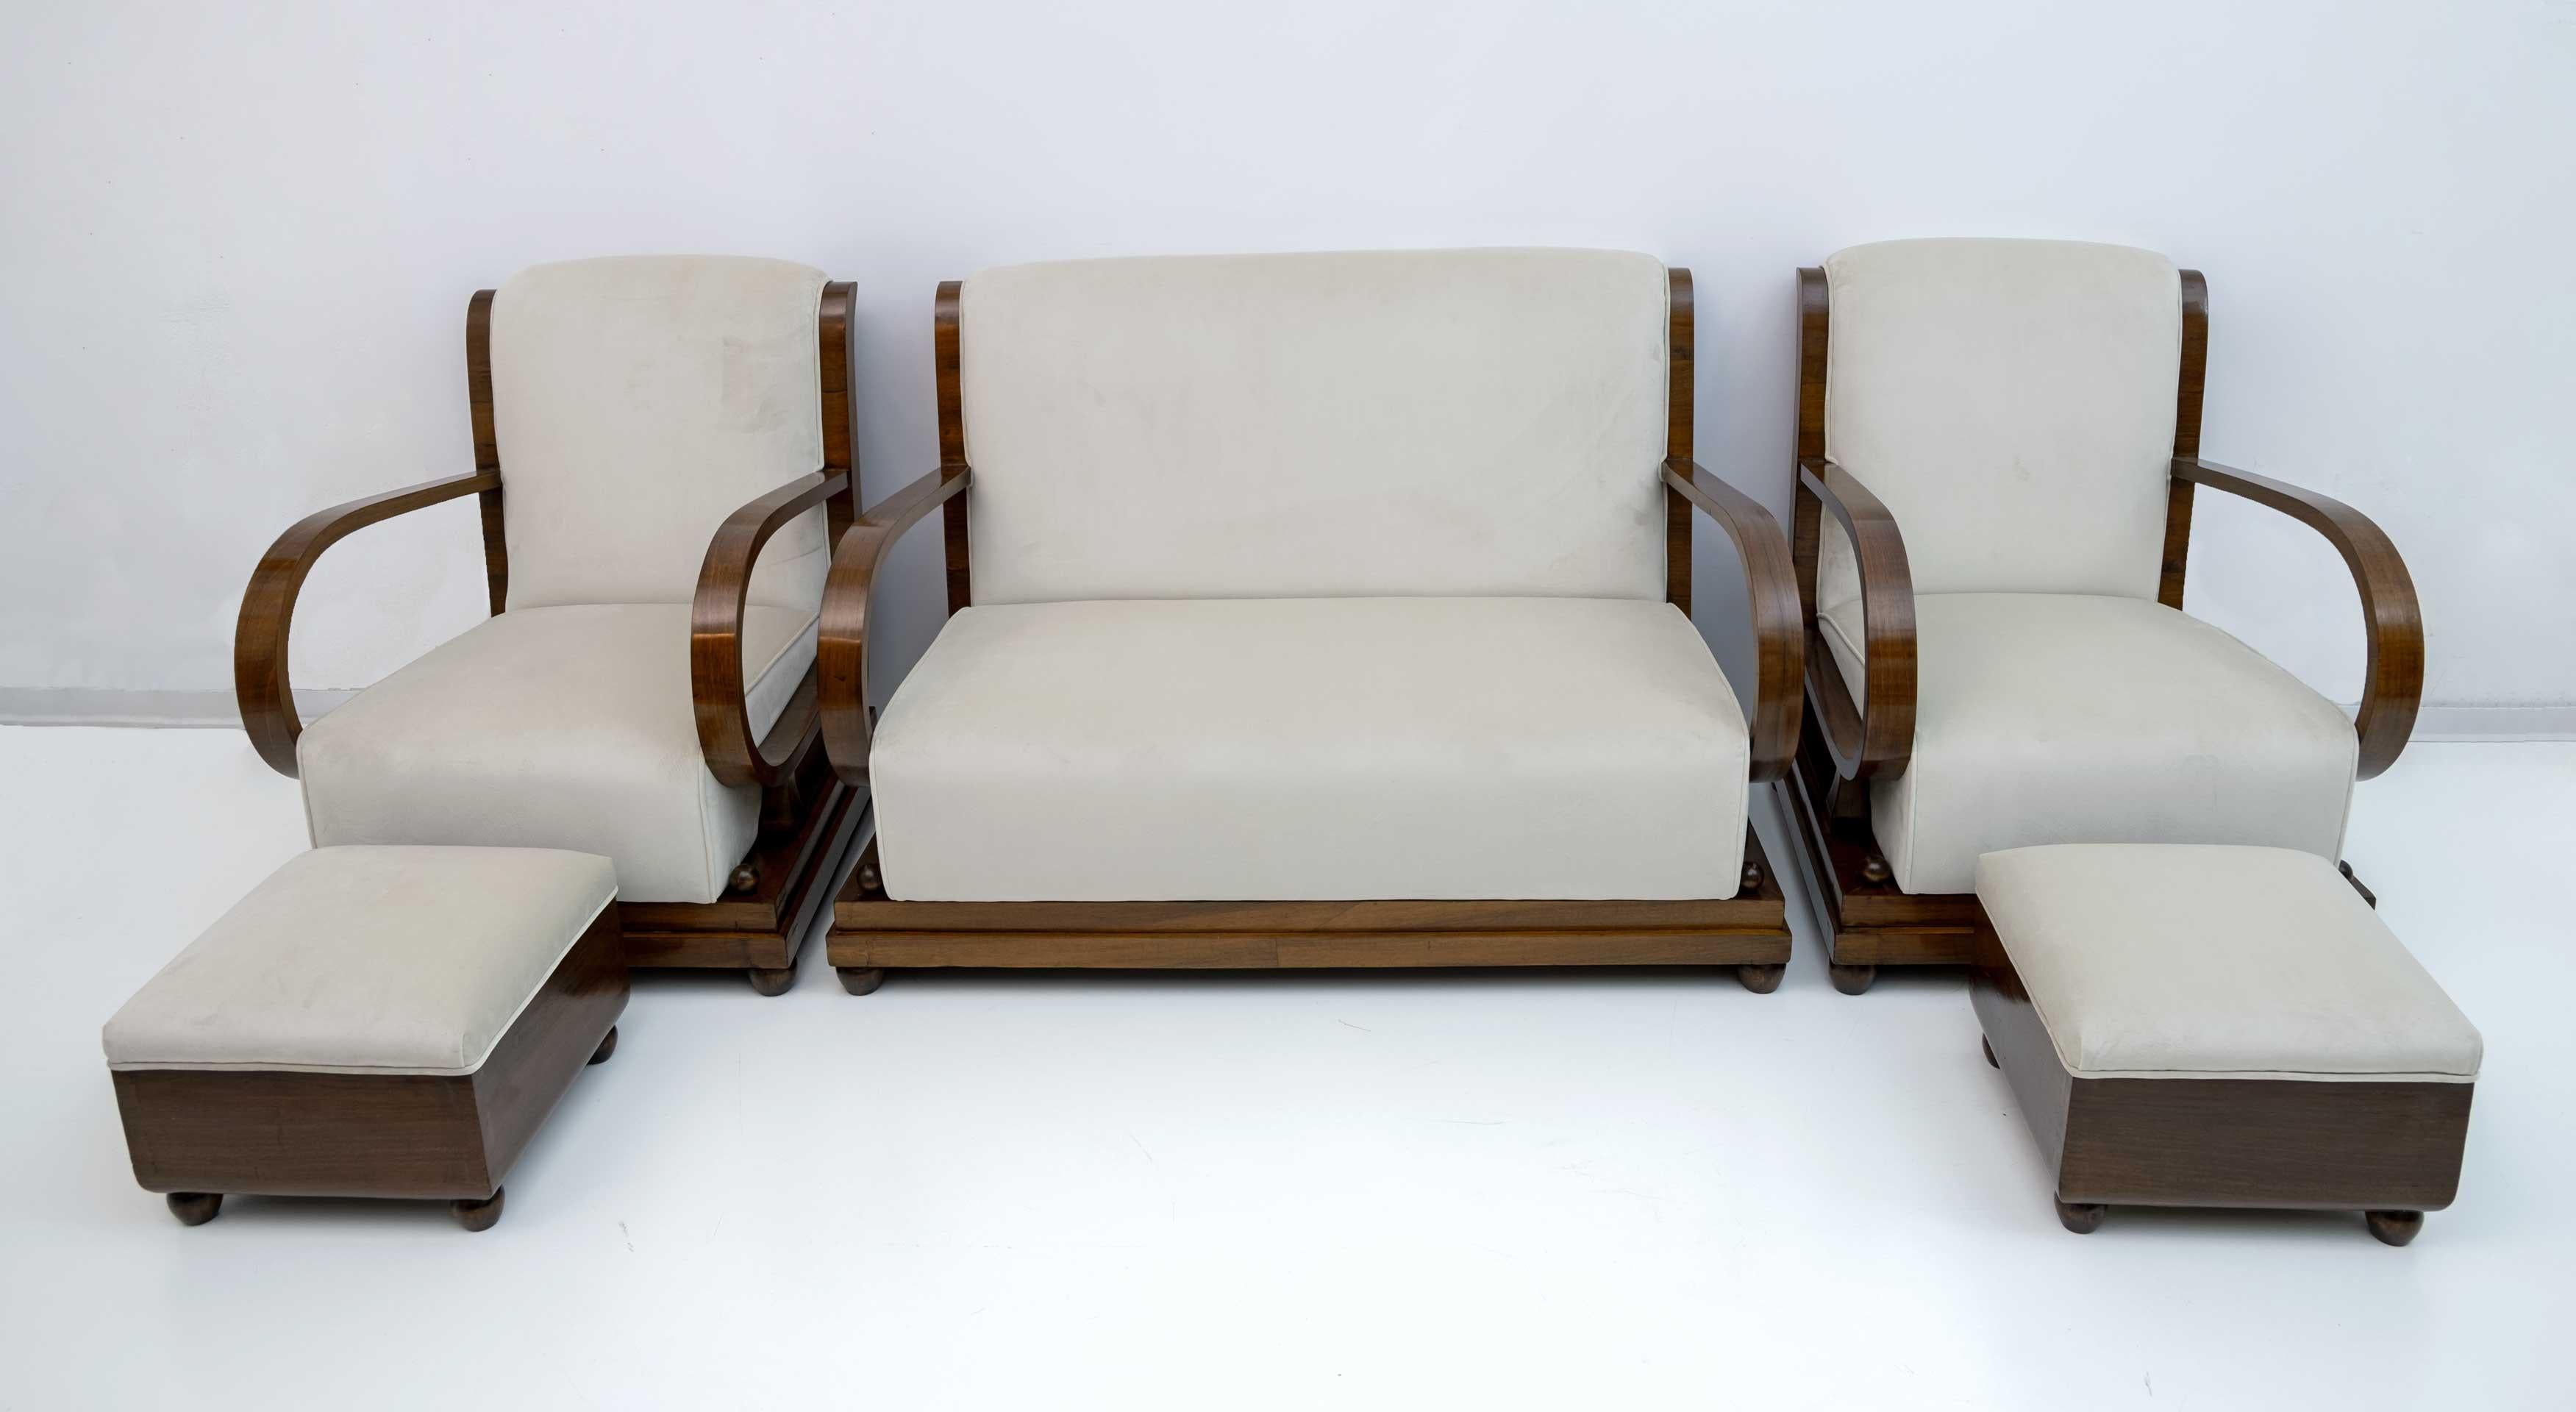 Suite de salon italien des années 1920 comprenant un canapé, une paire de fauteuils et une paire d'ottomans. Datant du début de la période Art Déco en Italie du Nord, en noyer et tapisserie de velours ivoire, les dossiers du canapé et des fauteuils